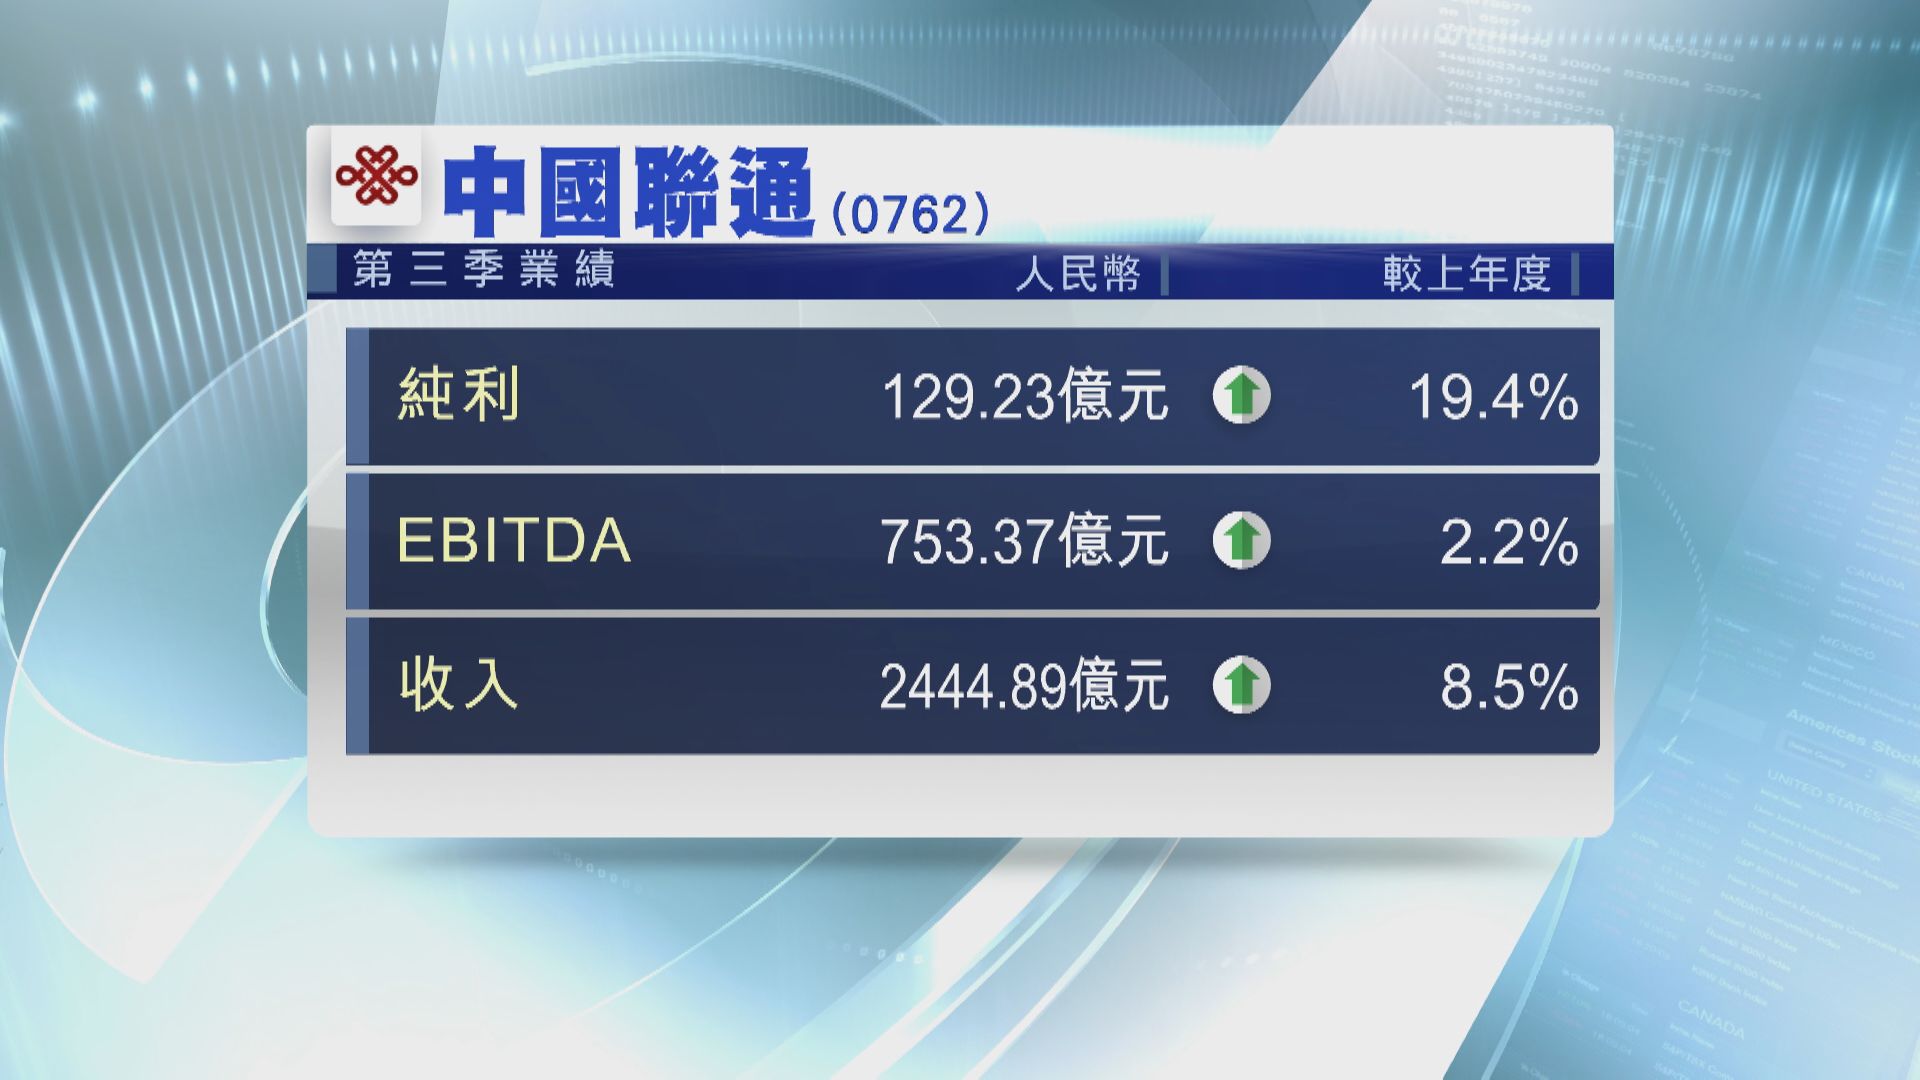 聯通首三季多賺19.4%  EBITDA升2.2%